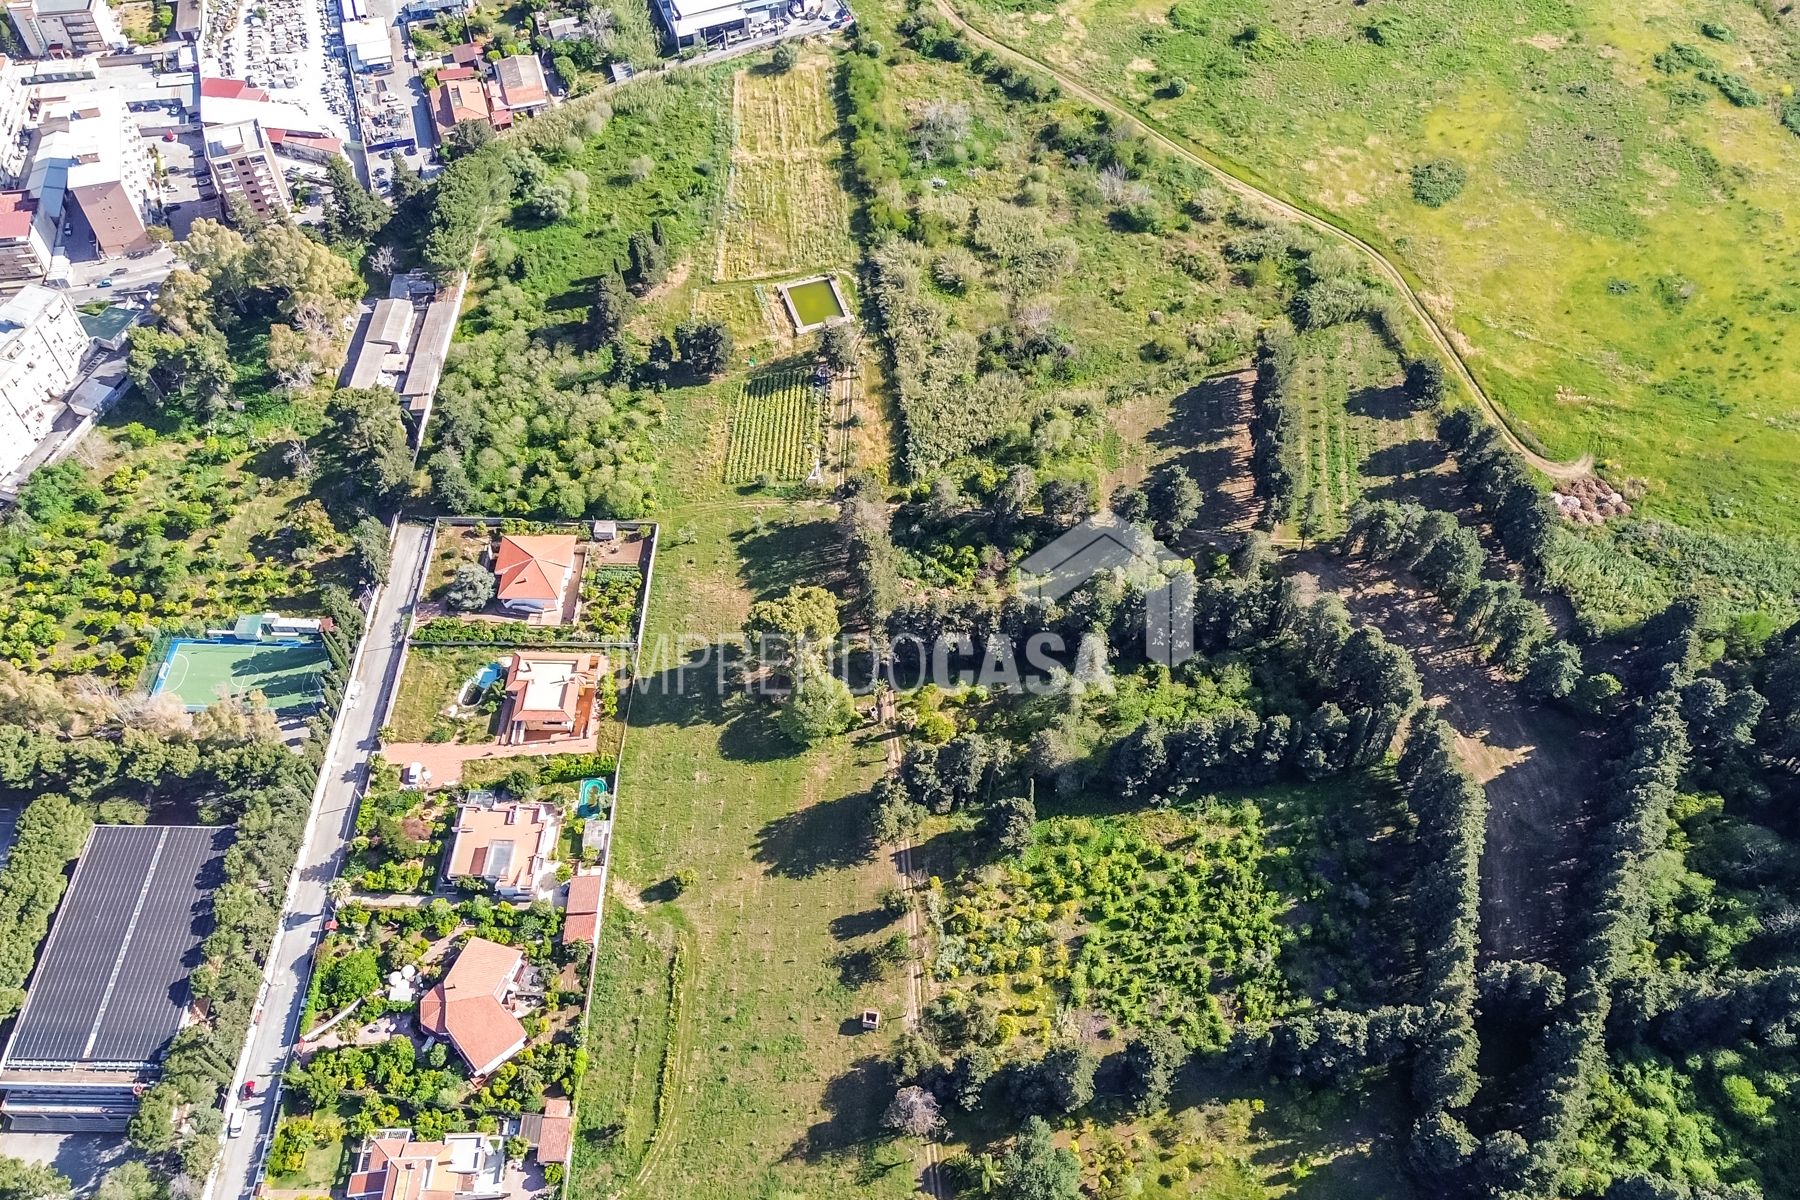 For sale terrain in city Palermo Sicilia